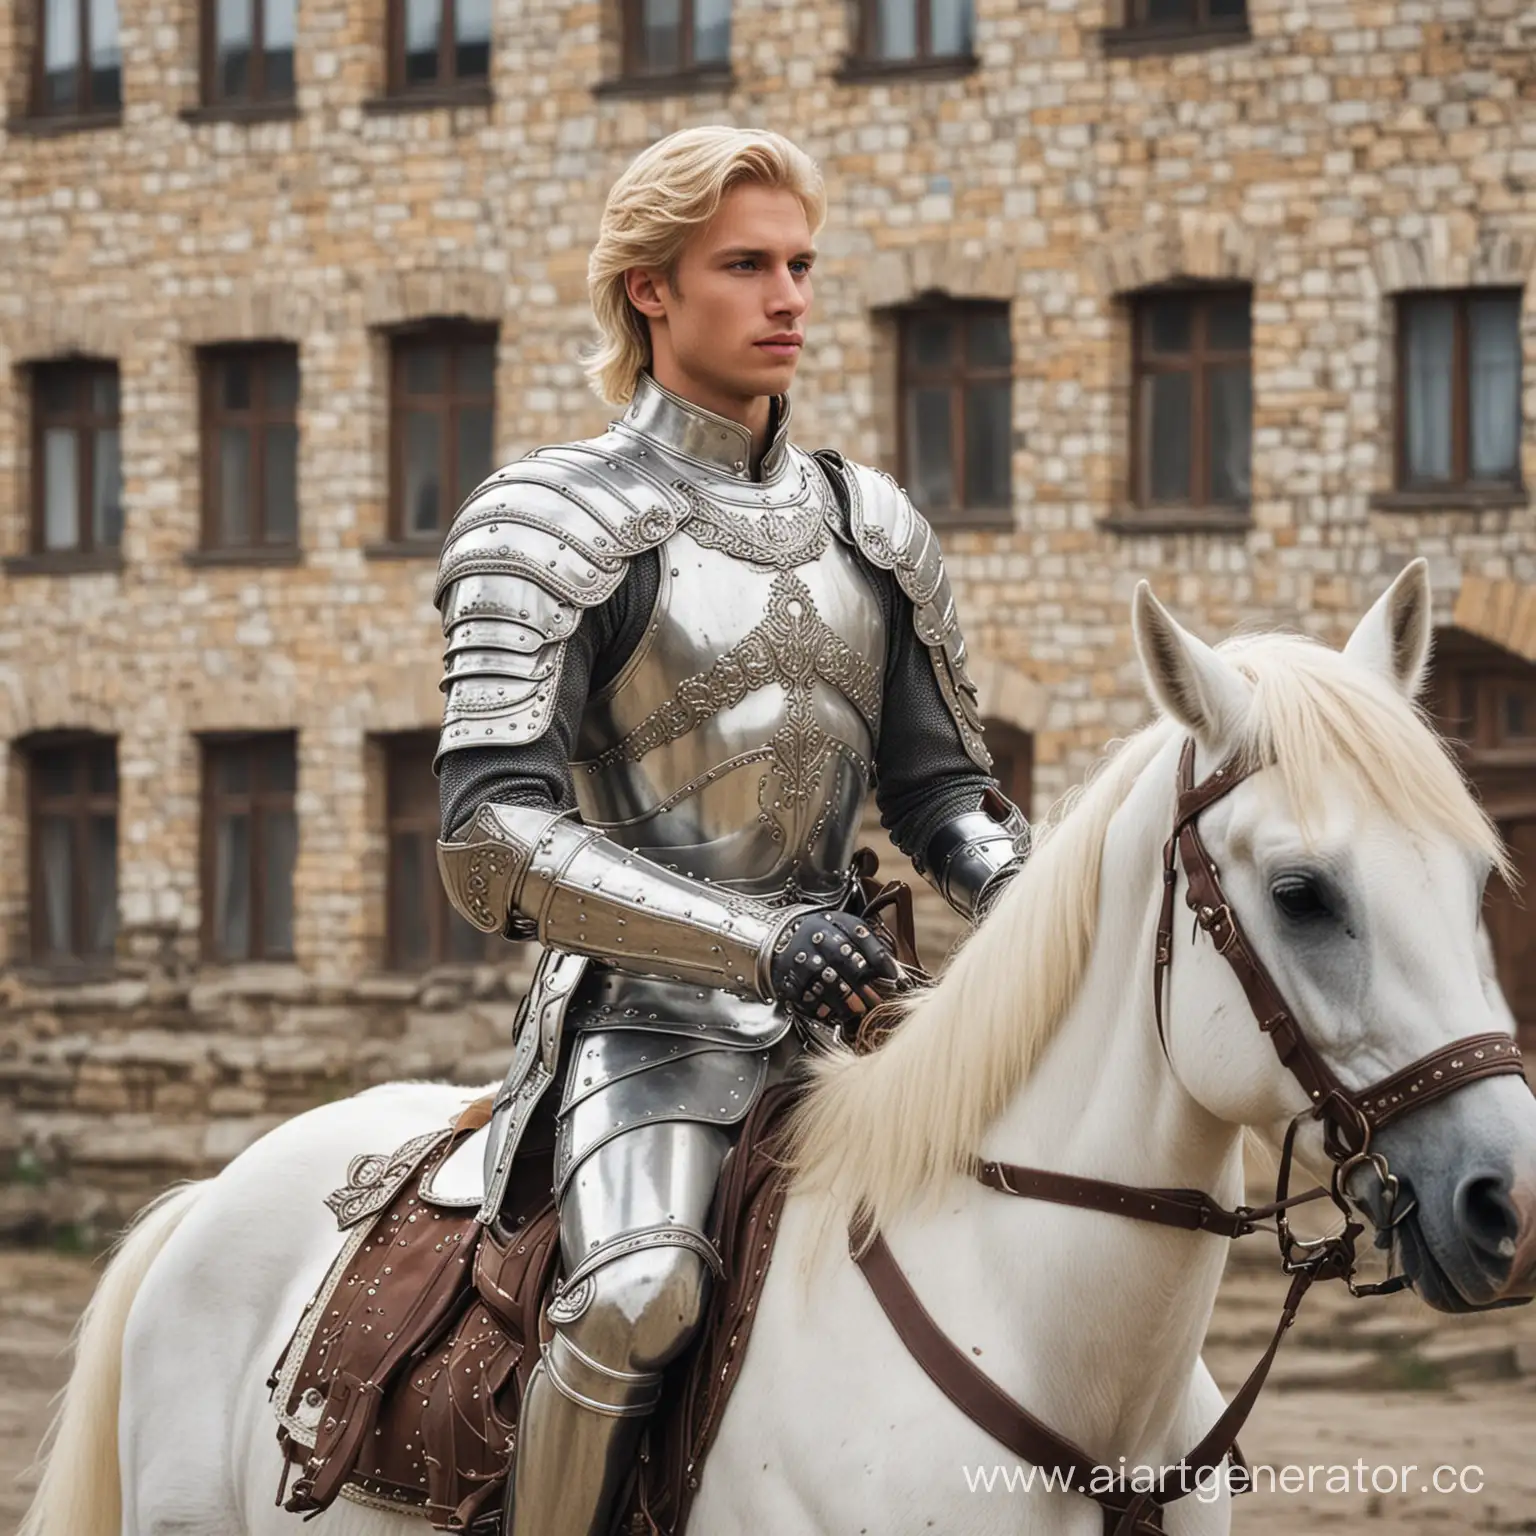 Handsome-Blond-Prince-Riding-White-Horse-in-Armor-through-Kansk-Krasnoyarsk-Krai